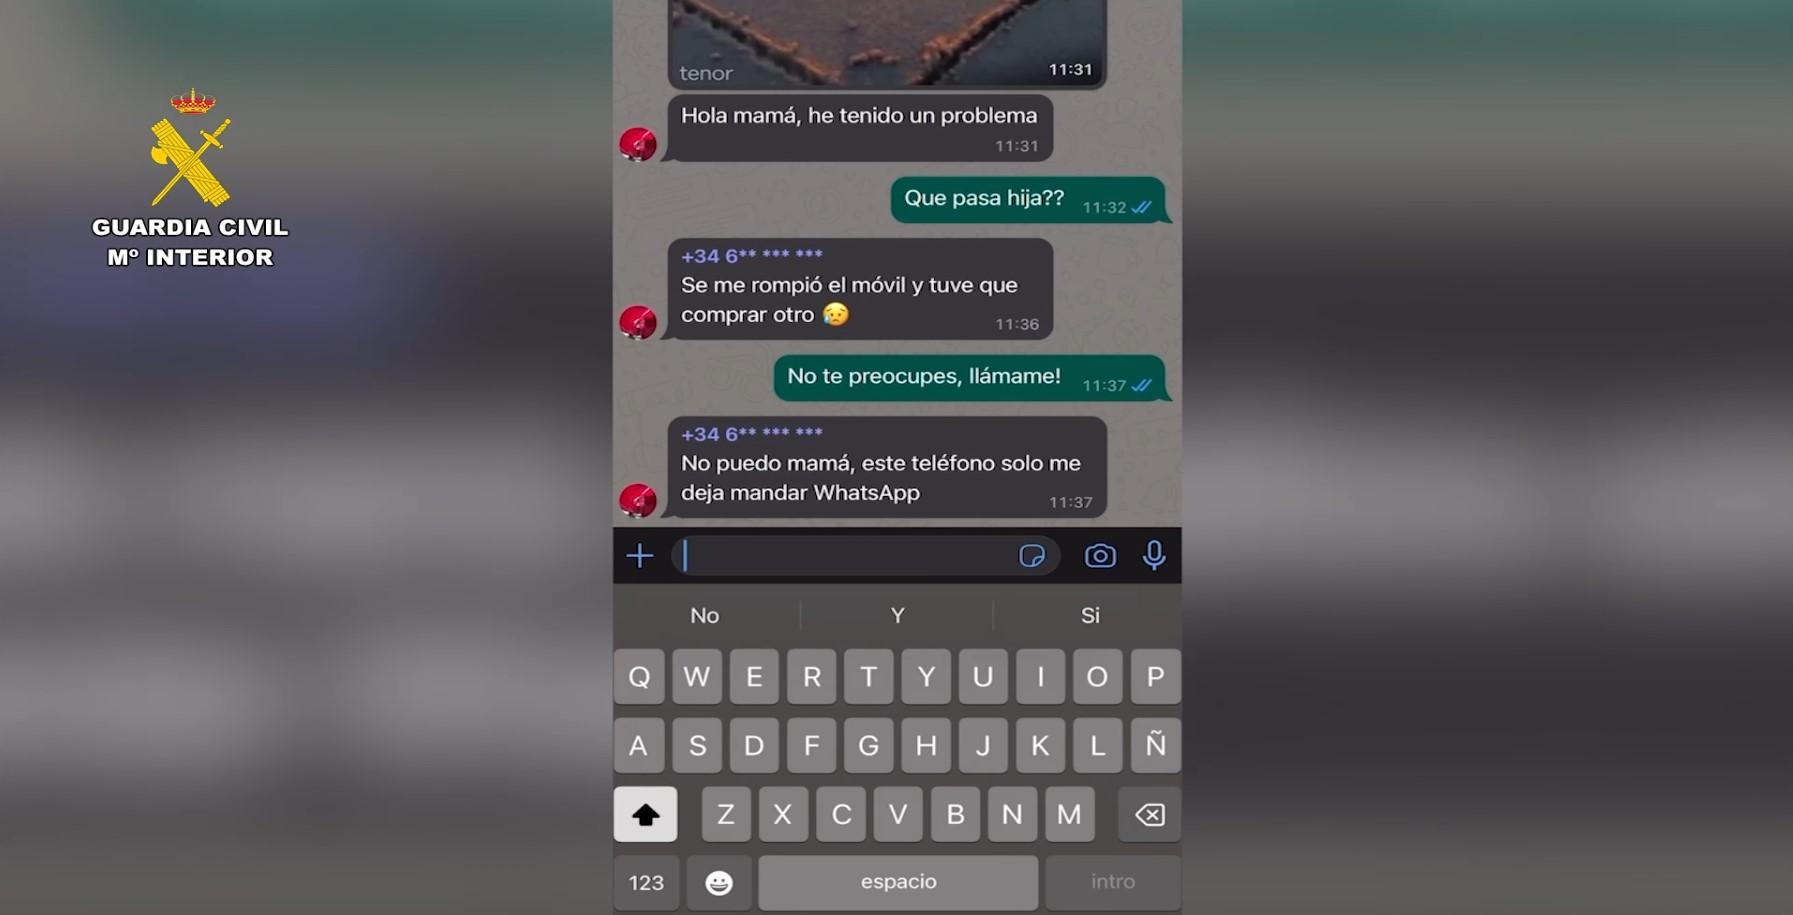 Imagen de la pantalla de un dispositivo móvil donde se ven los mensajes utilizados para la estafa